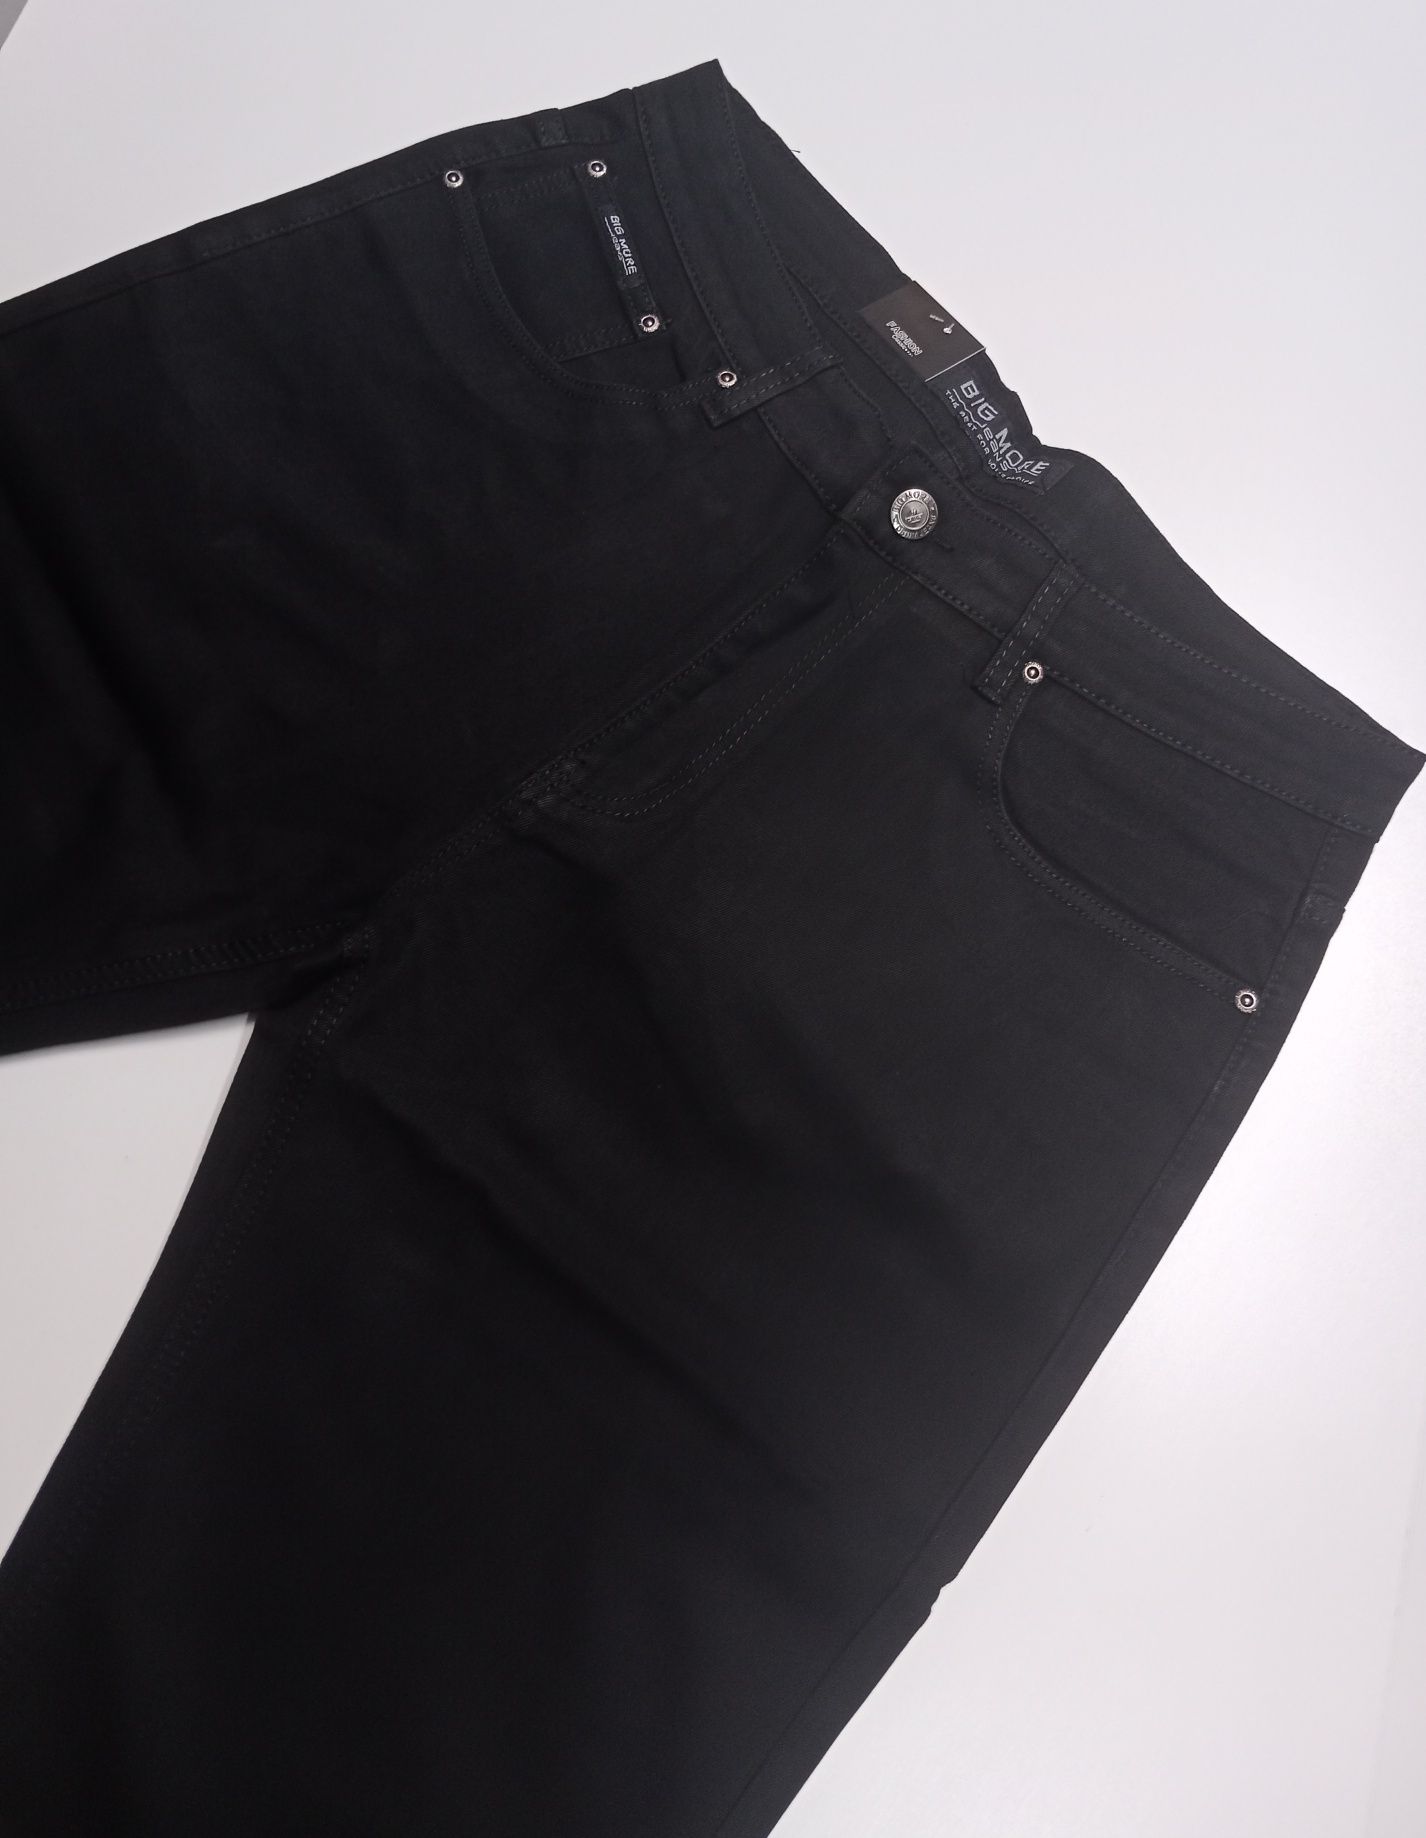 Spodnie NADWYMIARY czarne. Pas 128-130cm